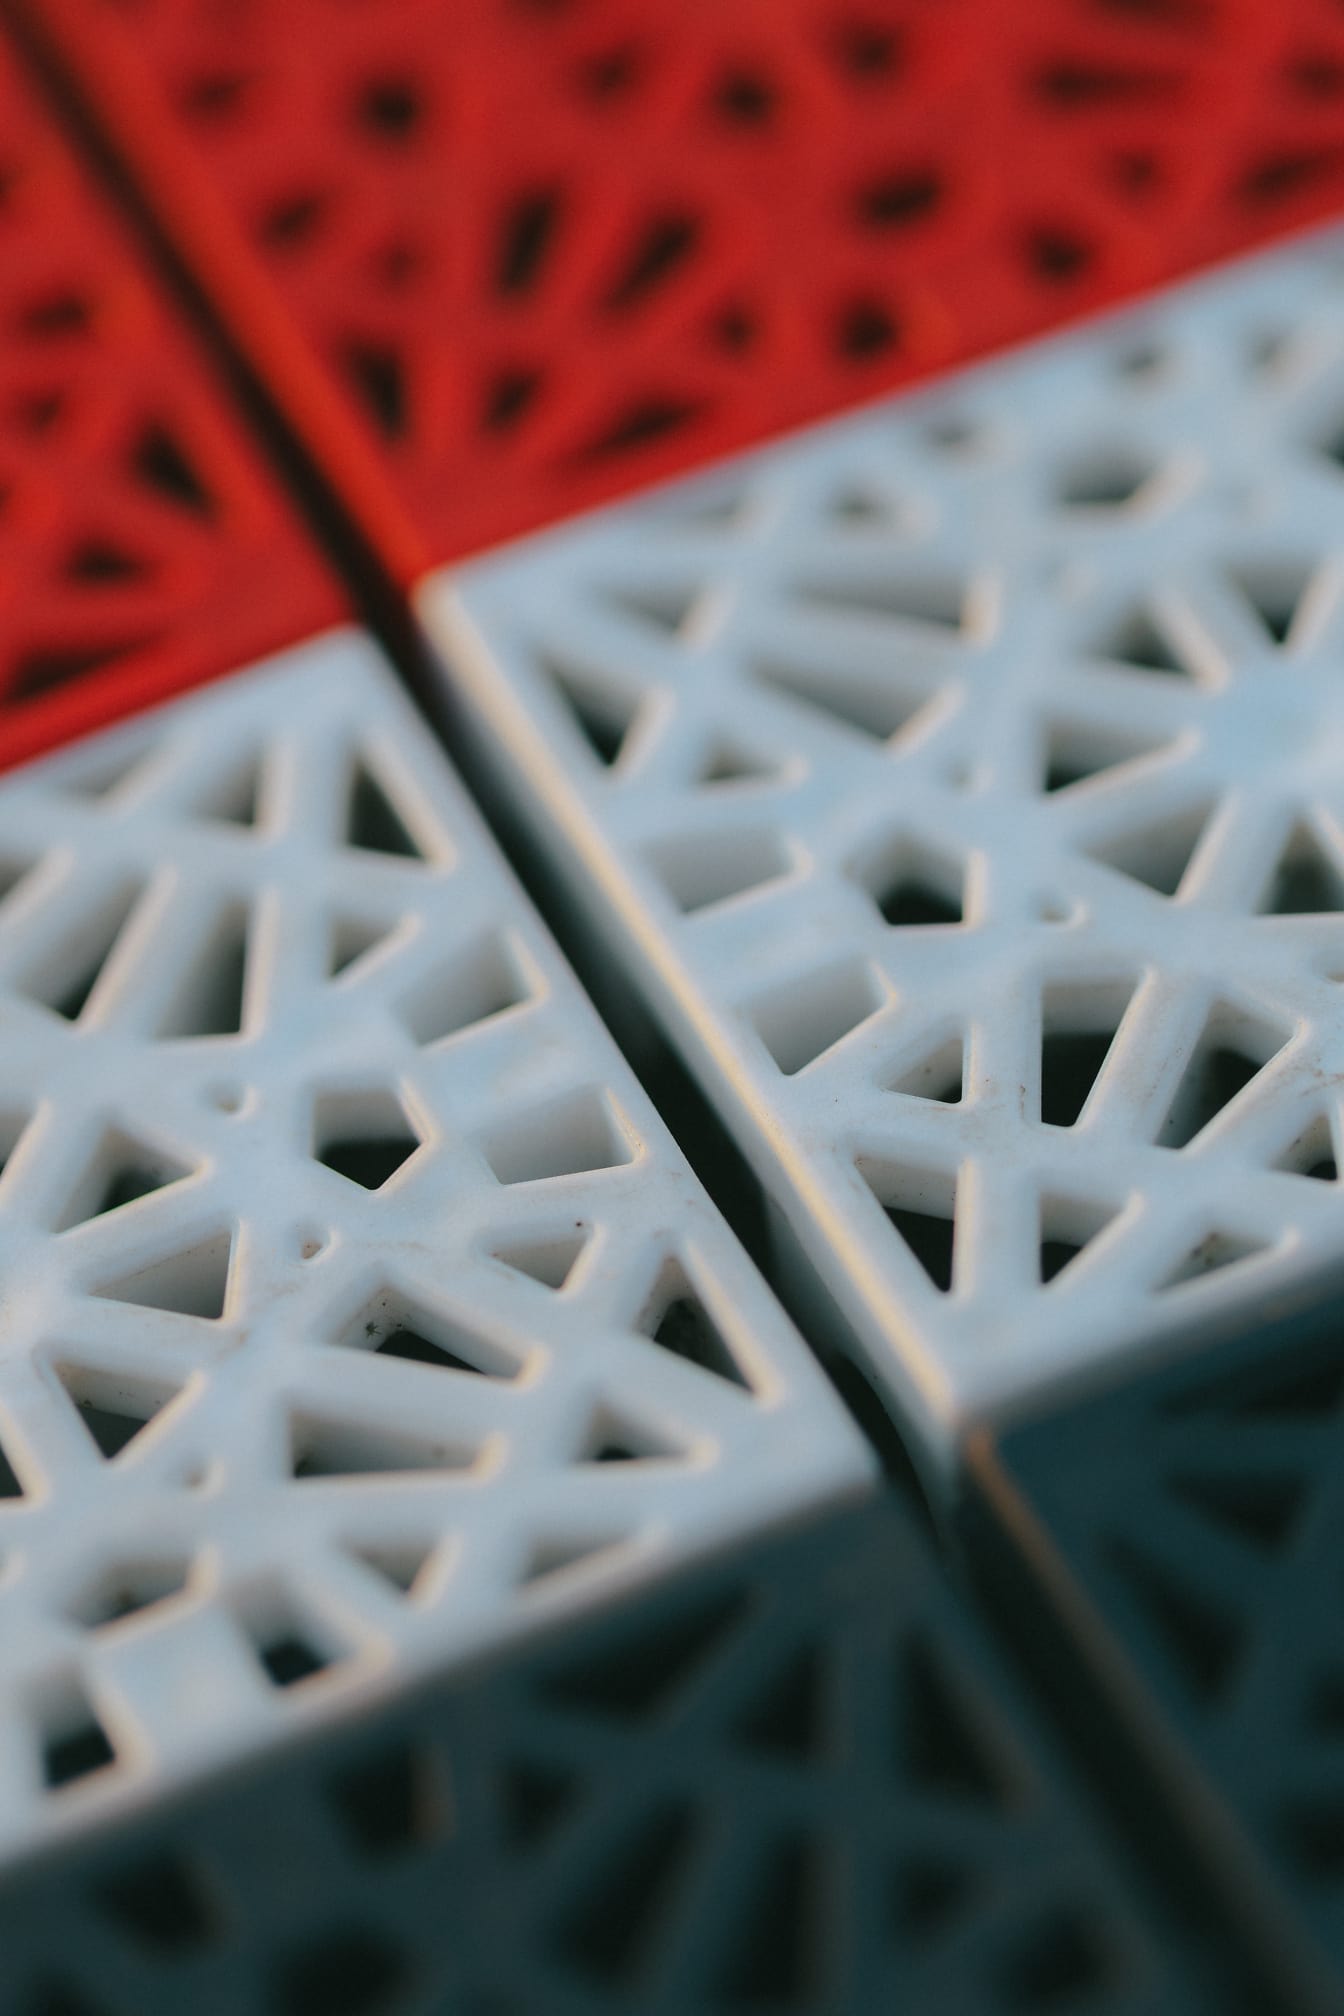 Cận cảnh kết cấu nhựa màu đỏ và trắng với hình dạng hình học